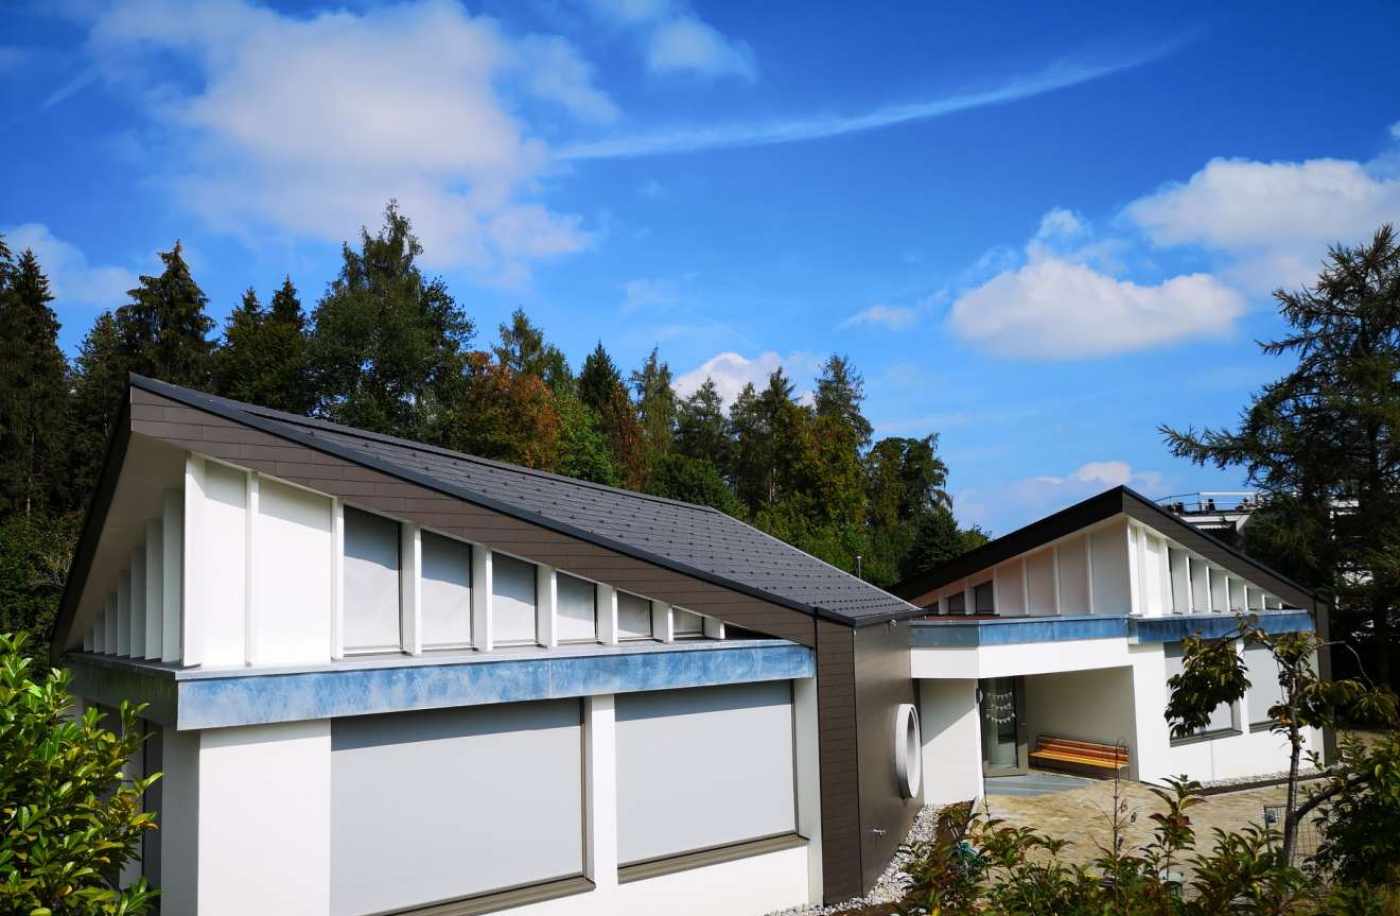 Sanierung Kindergarten Reidholz
8805 Richterswil, Projekt und Baukontrolle für die Tragstruktur in Massivbauweise. Beratung fürHolzbauweise